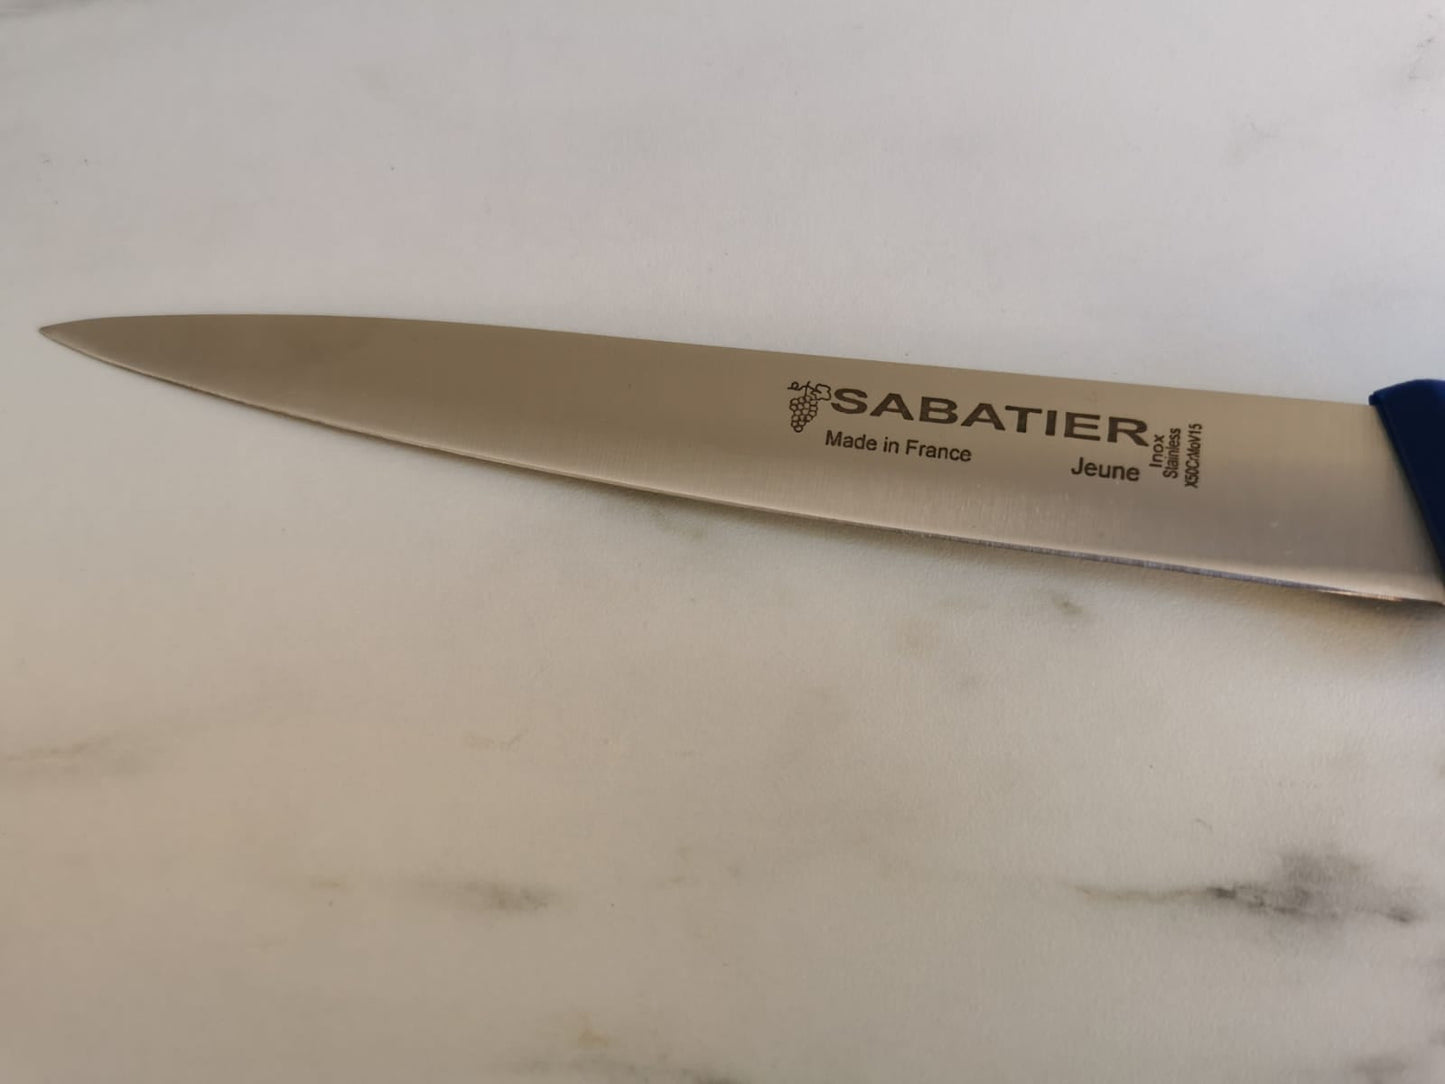 Couteau Filet de sole Sabatier 17cm - ALLWENEEDIS